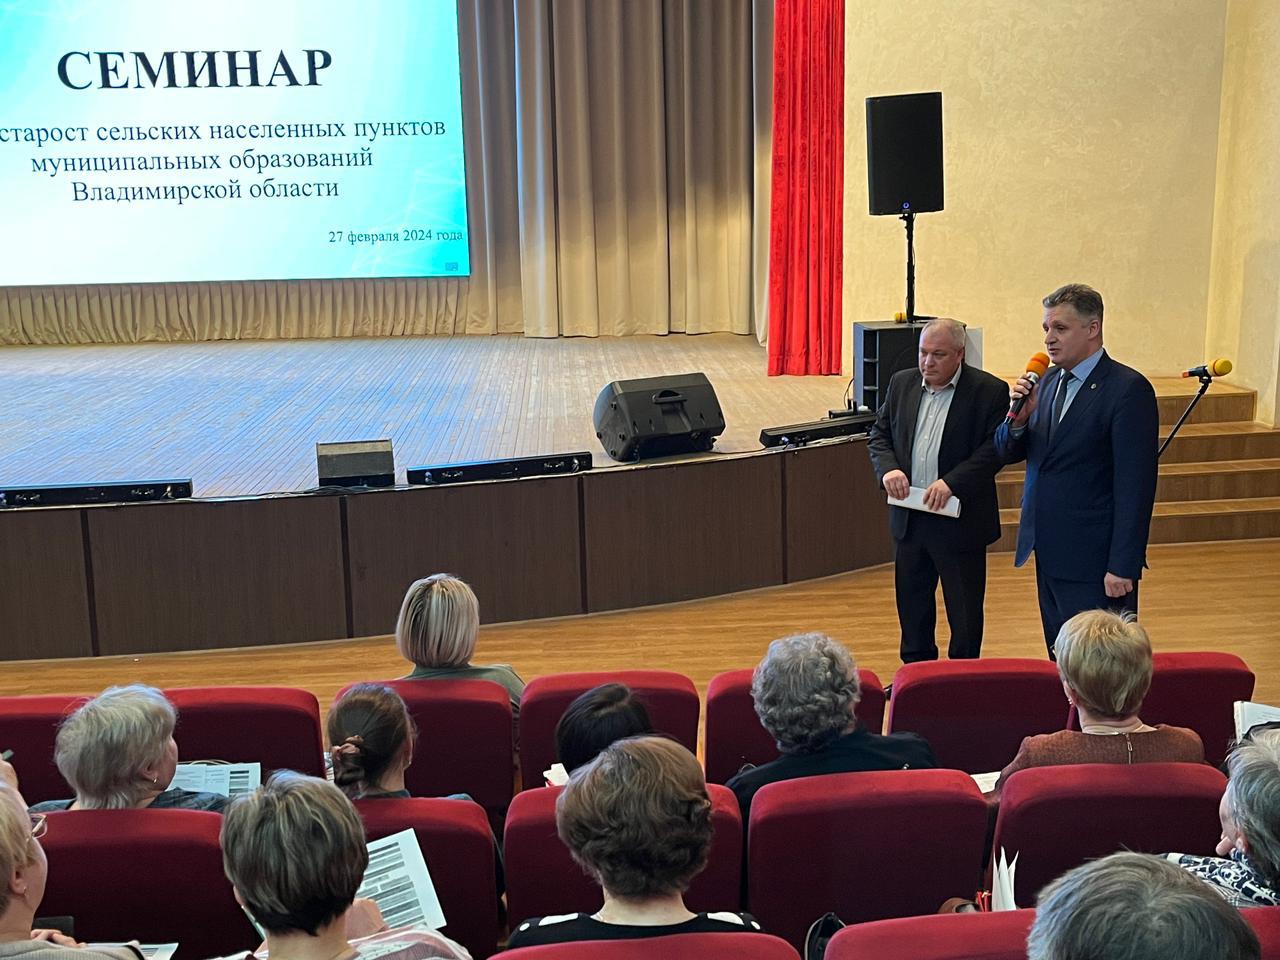 Первый вице-президент Адвокатской палаты Владимирской области принял участие в семинаре для старост сельских населенных пунктов